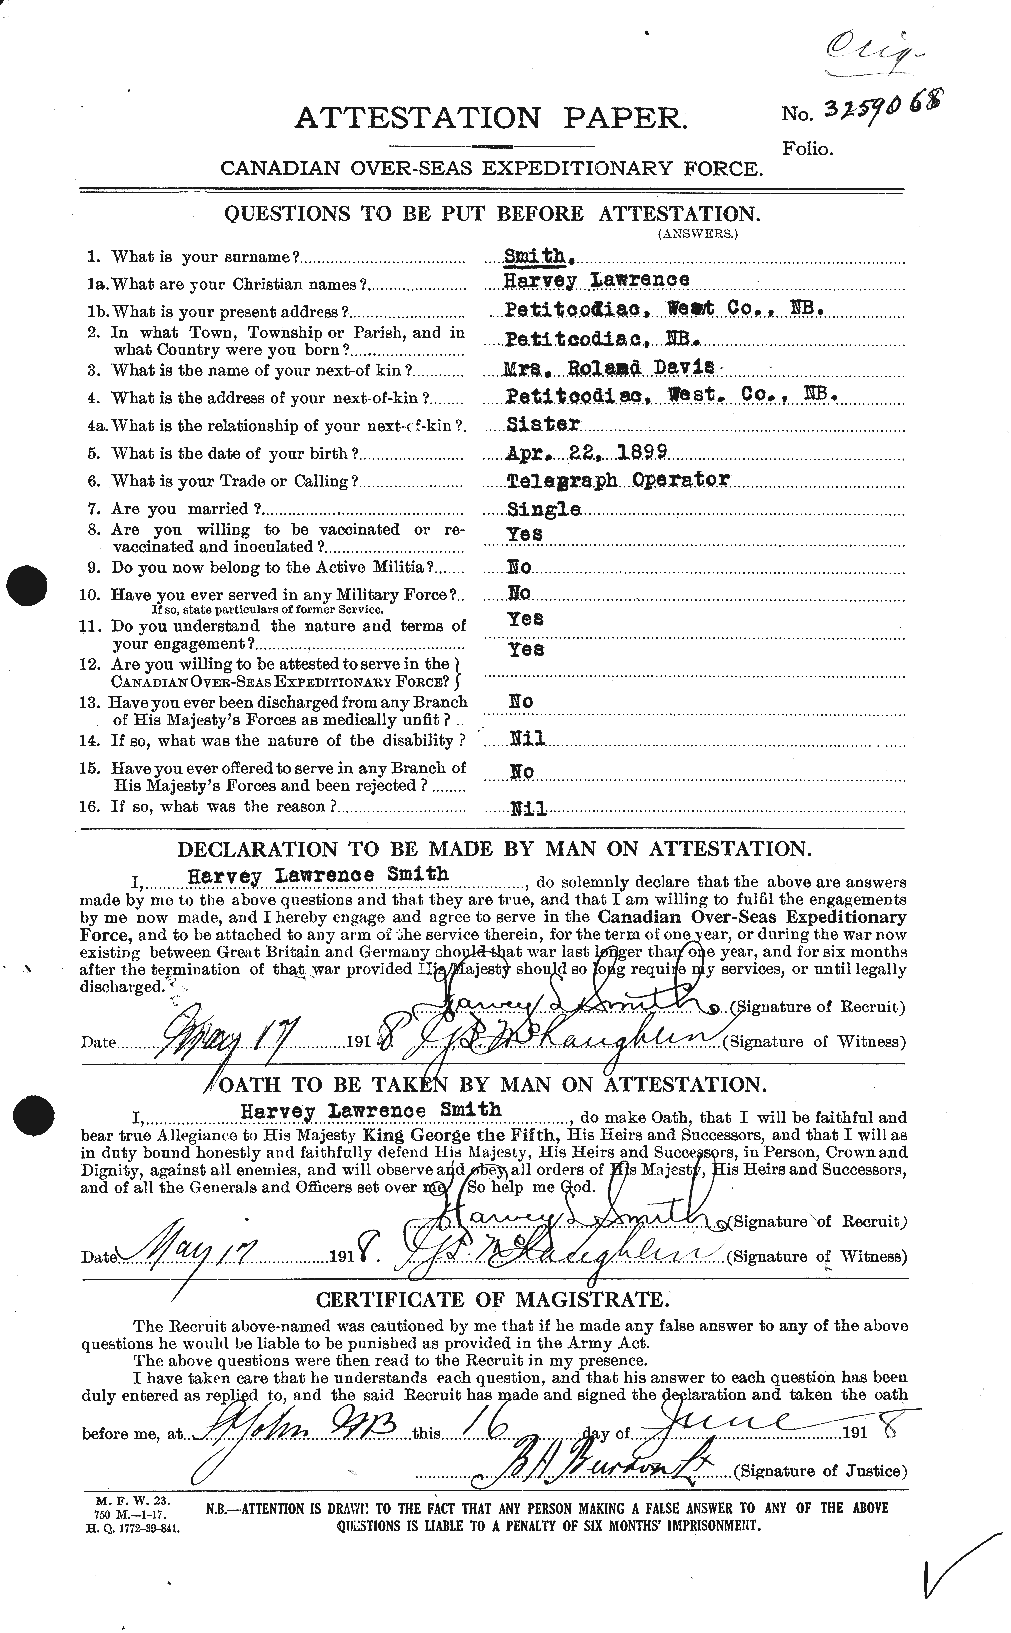 Dossiers du Personnel de la Première Guerre mondiale - CEC 105190a